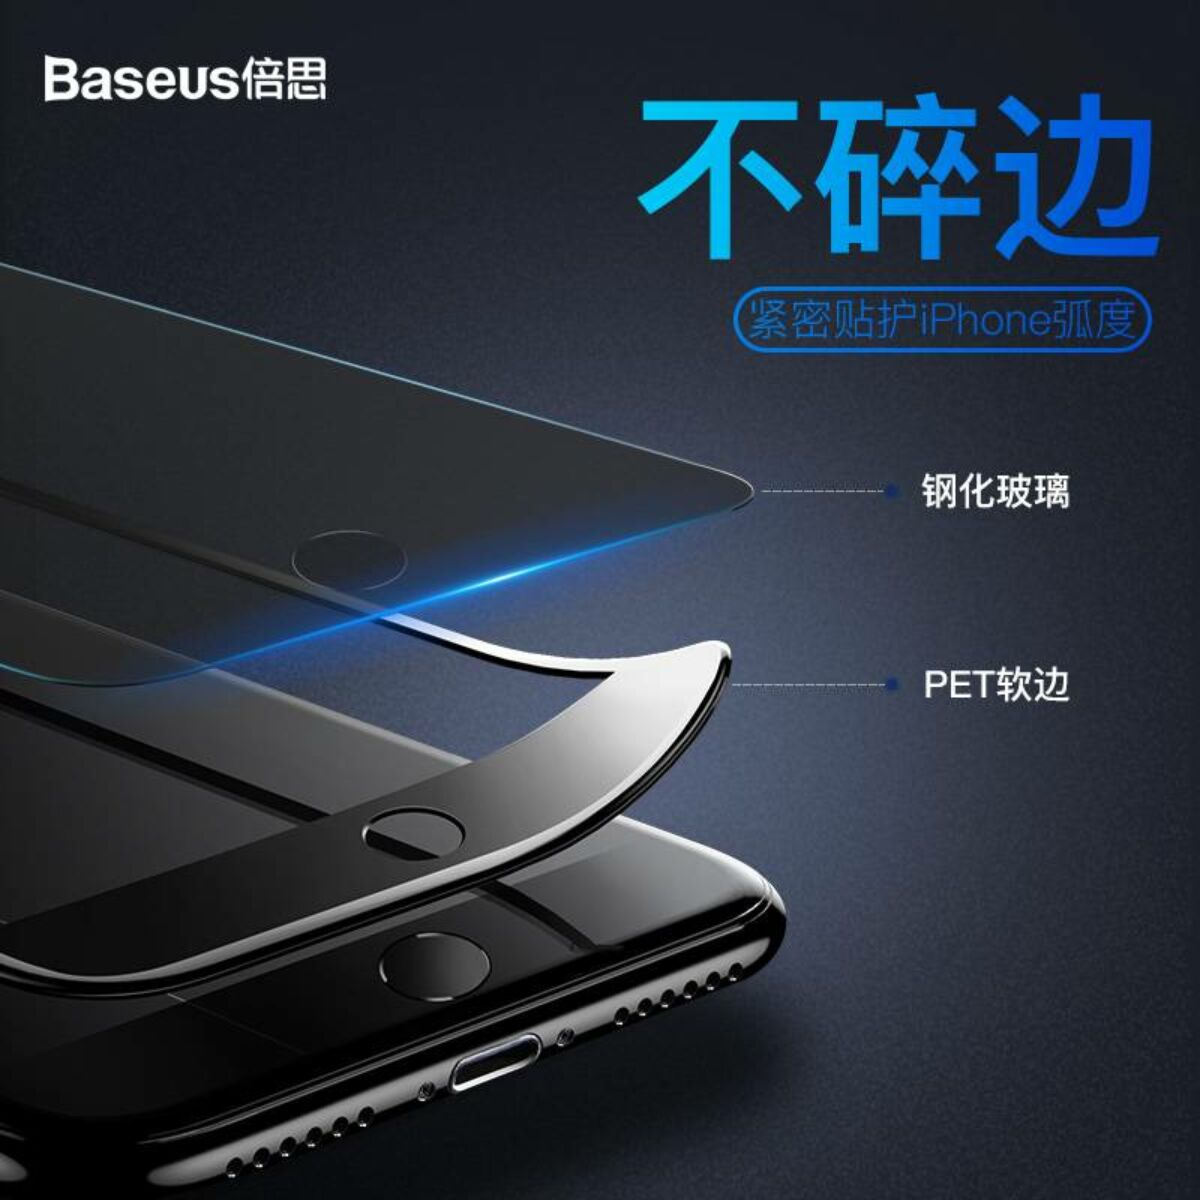 Baseus iPhone 8/7 Plus 0.23 mm, teljes felületre edzett üveg, törésálló élek, betekintés védelemmel, fehér (SGAPIPH8P-ATG02